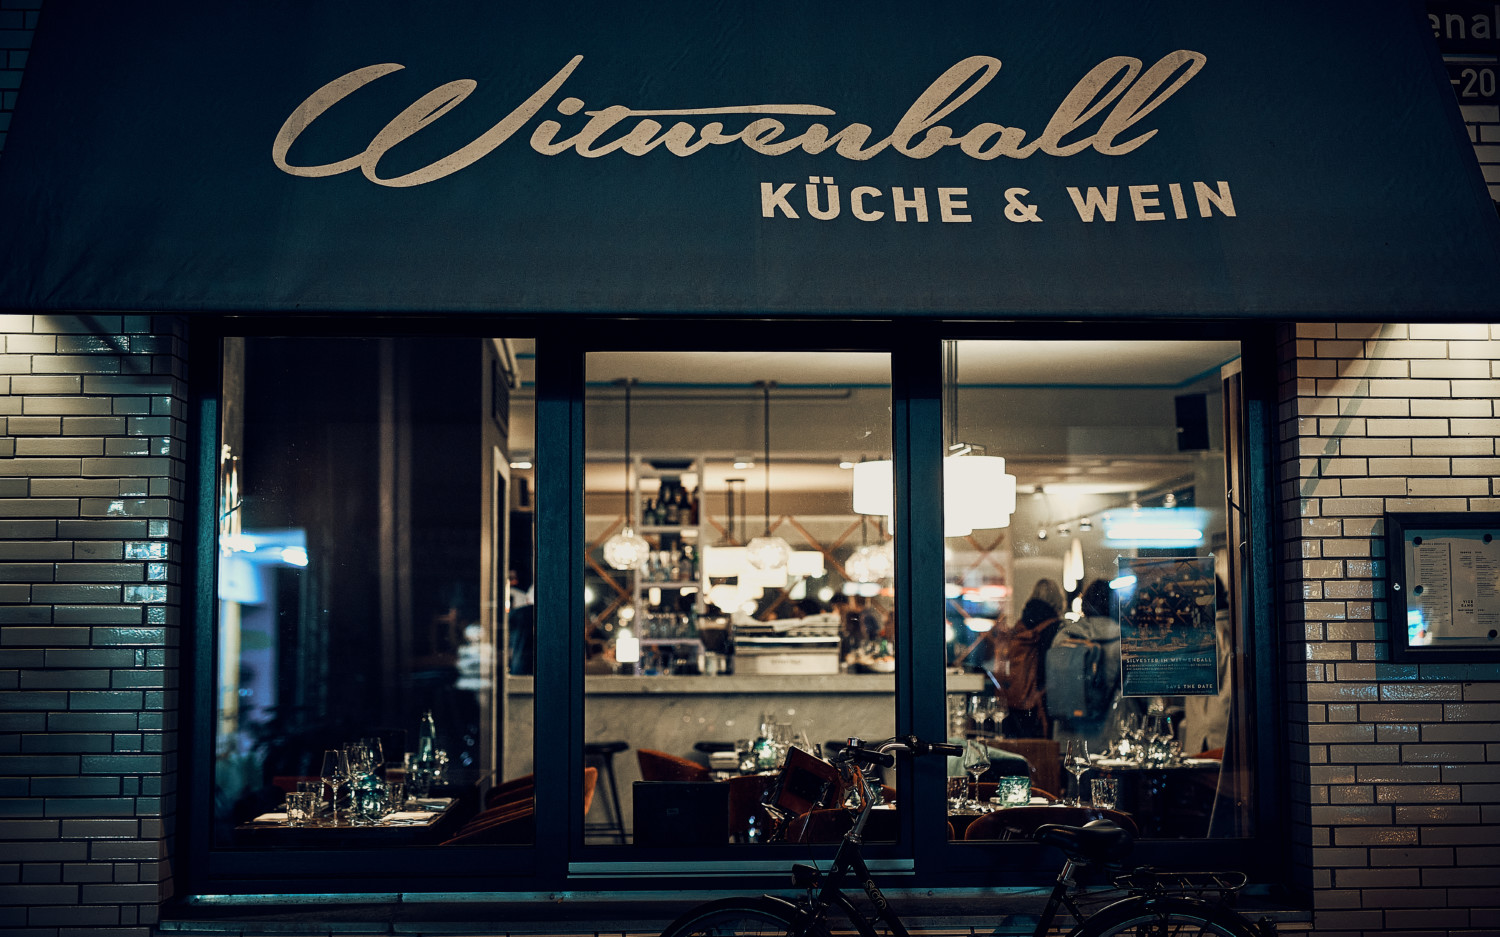 „Witwenball Küche & Wein“ / ©Marc Sill